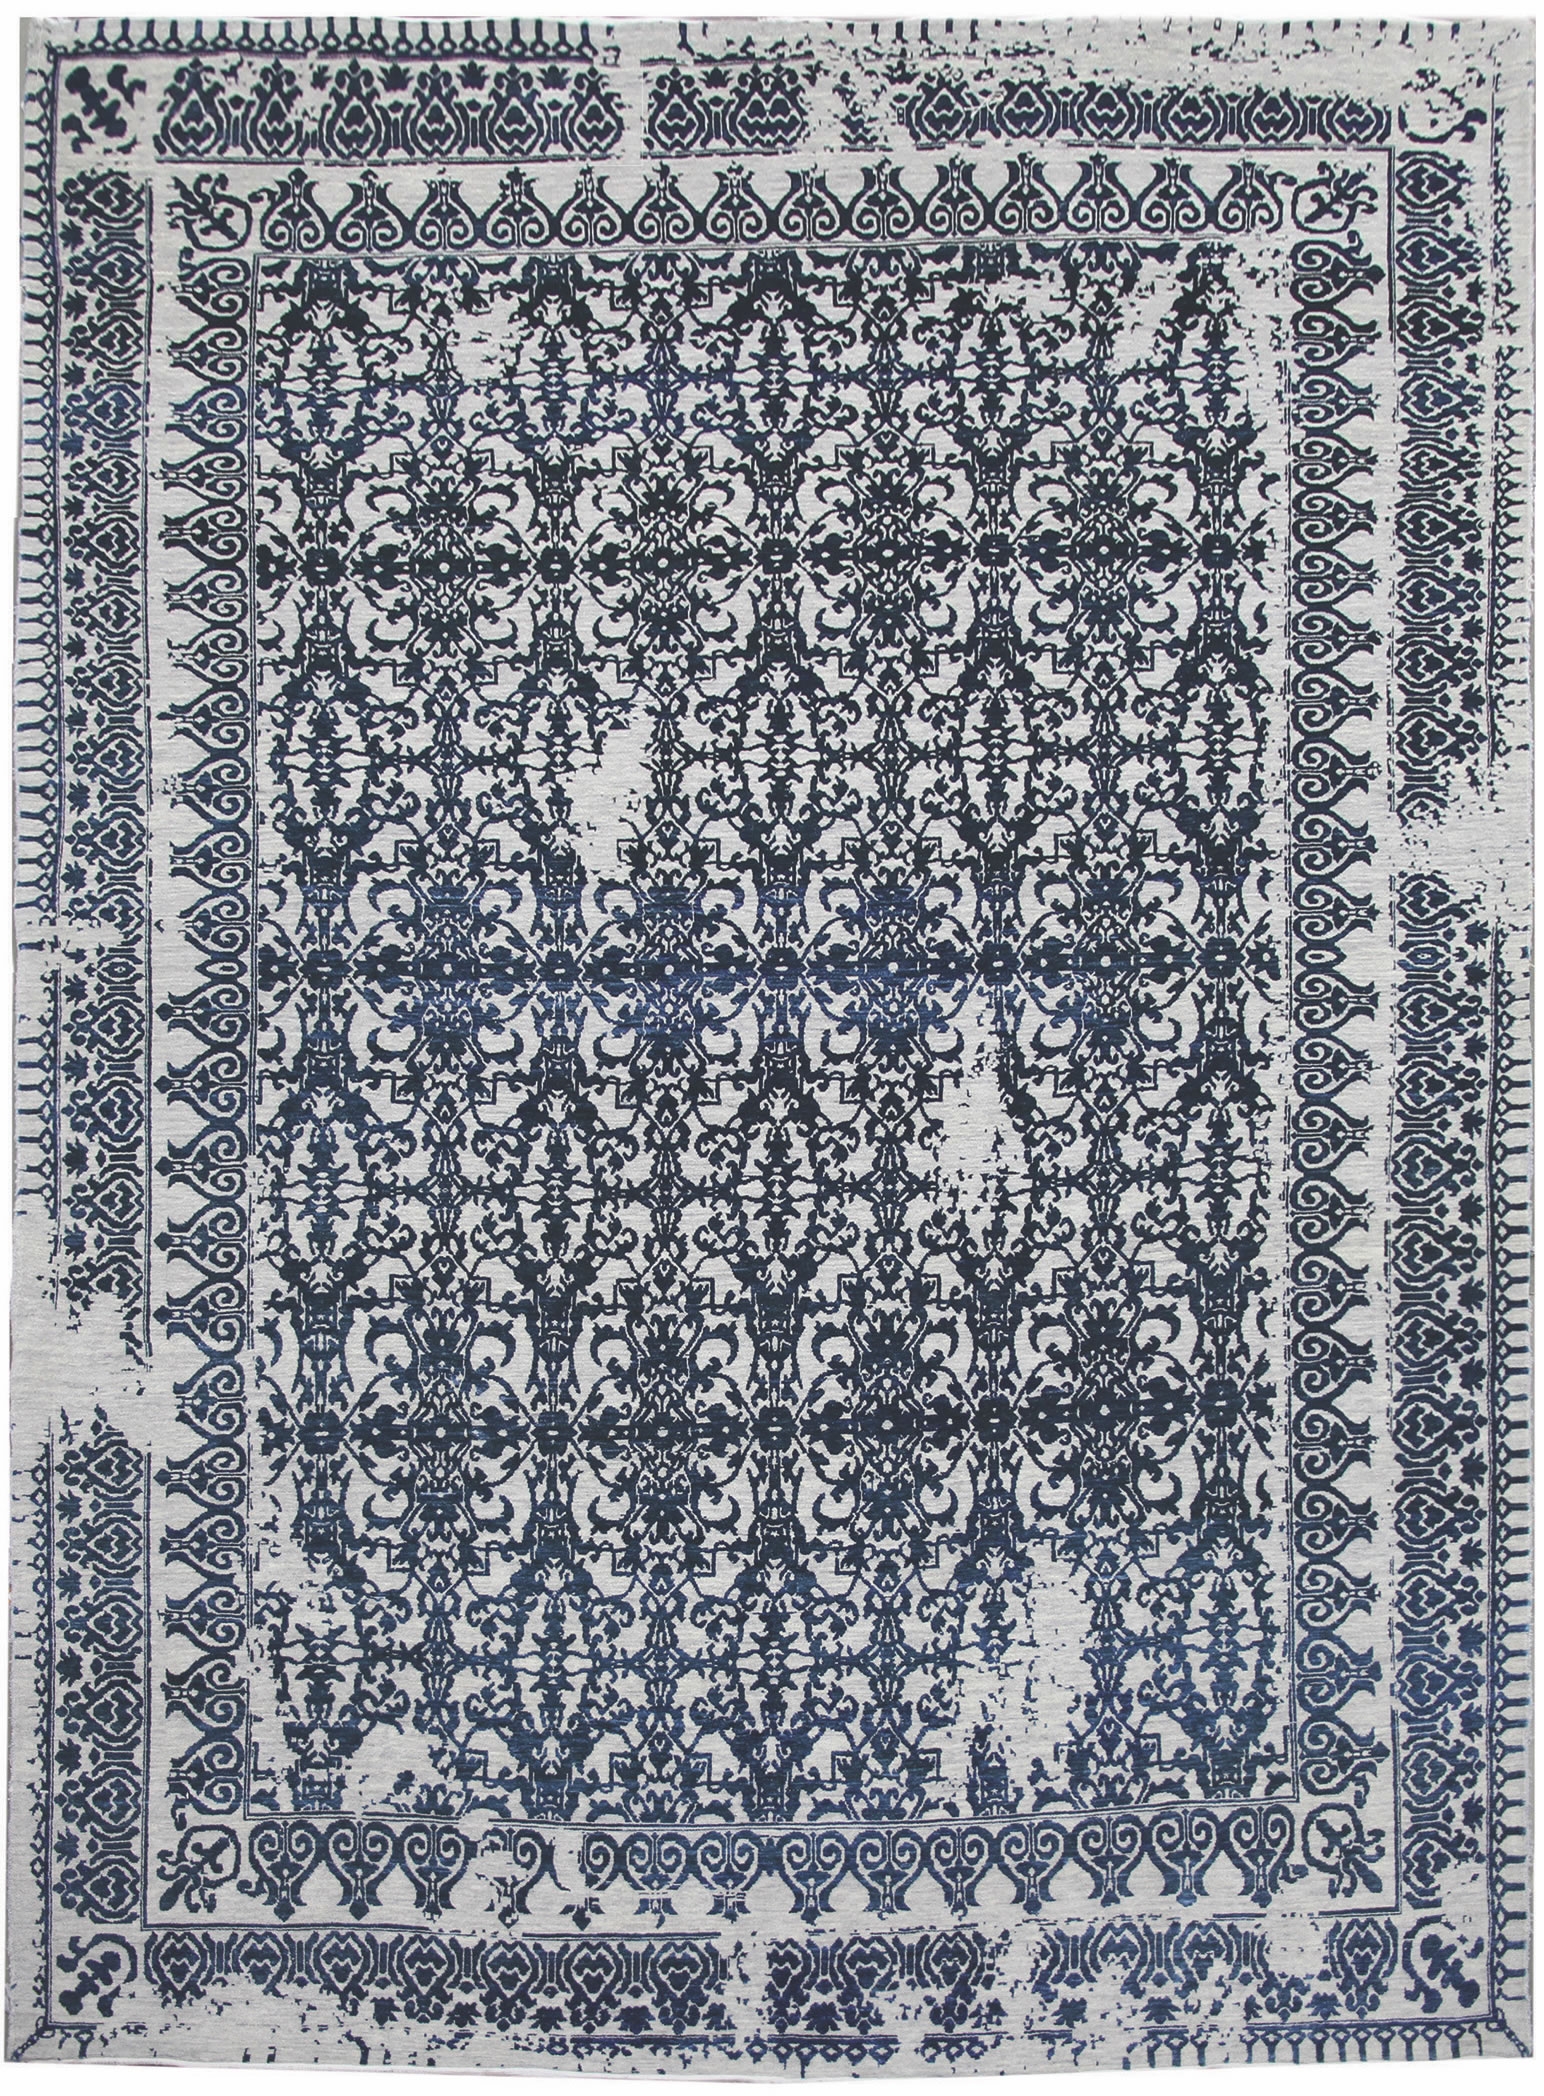 Ručne viazaný kusový koberec Diamond DC-JK 7 Silver / denim - 140x200 cm Diamond Carpets koberce 